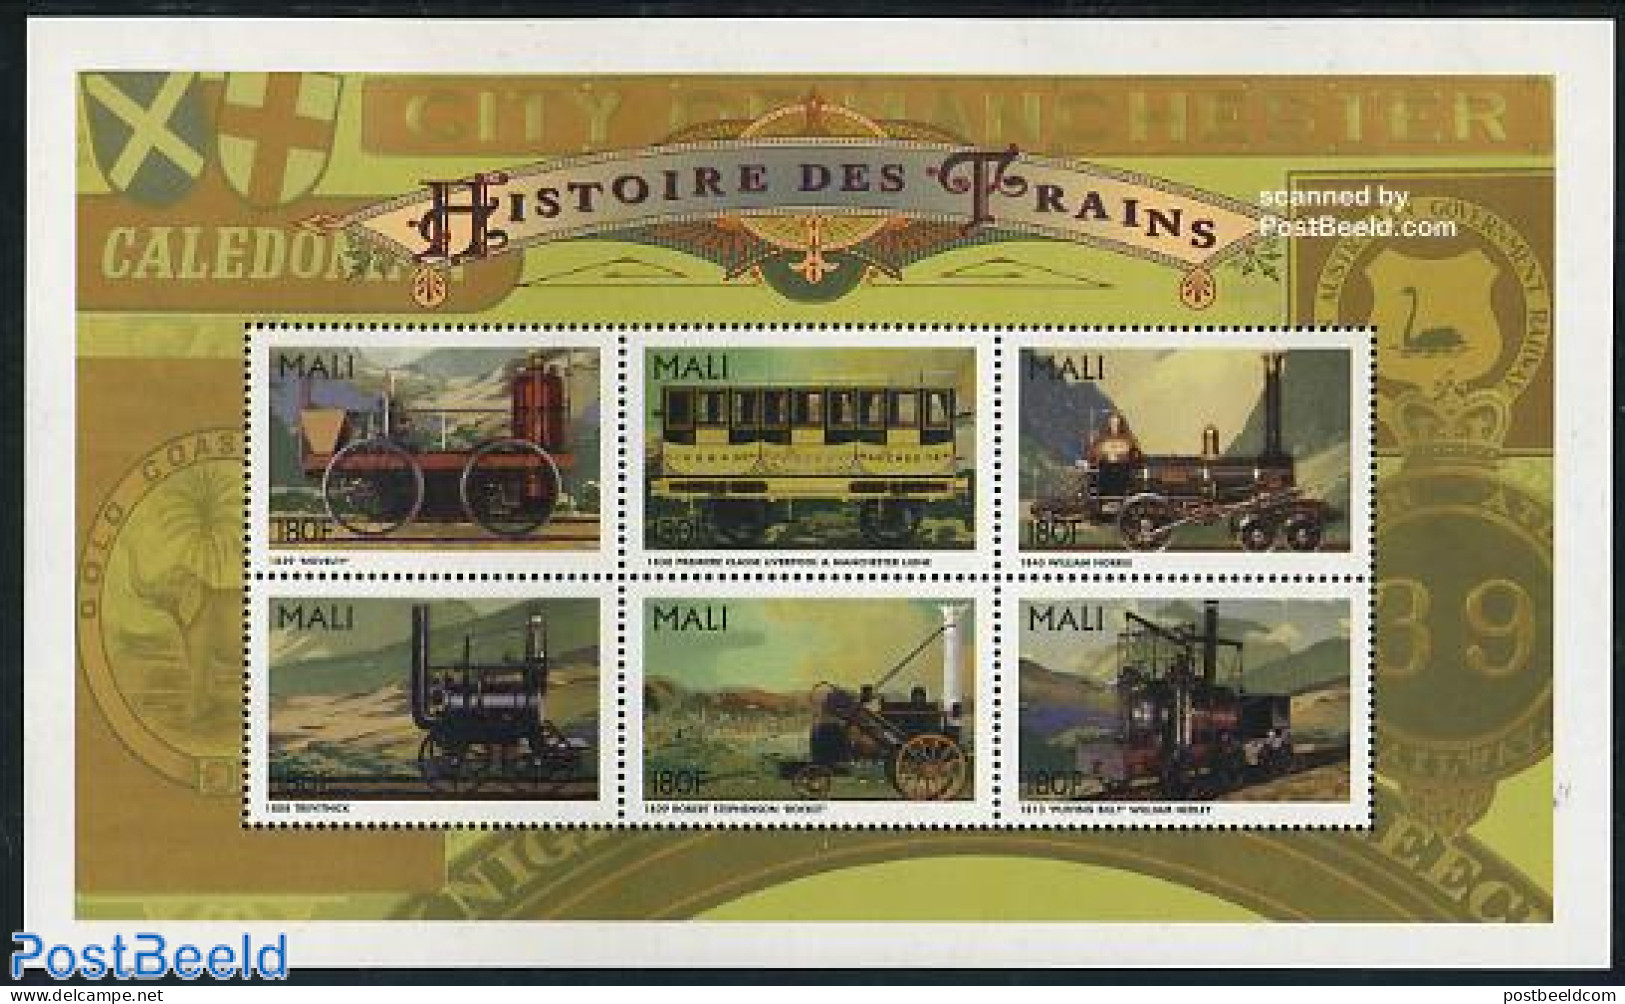 Mali 1996 Railways History 6v M/s (6x180f), Mint NH, Transport - Railways - Trains